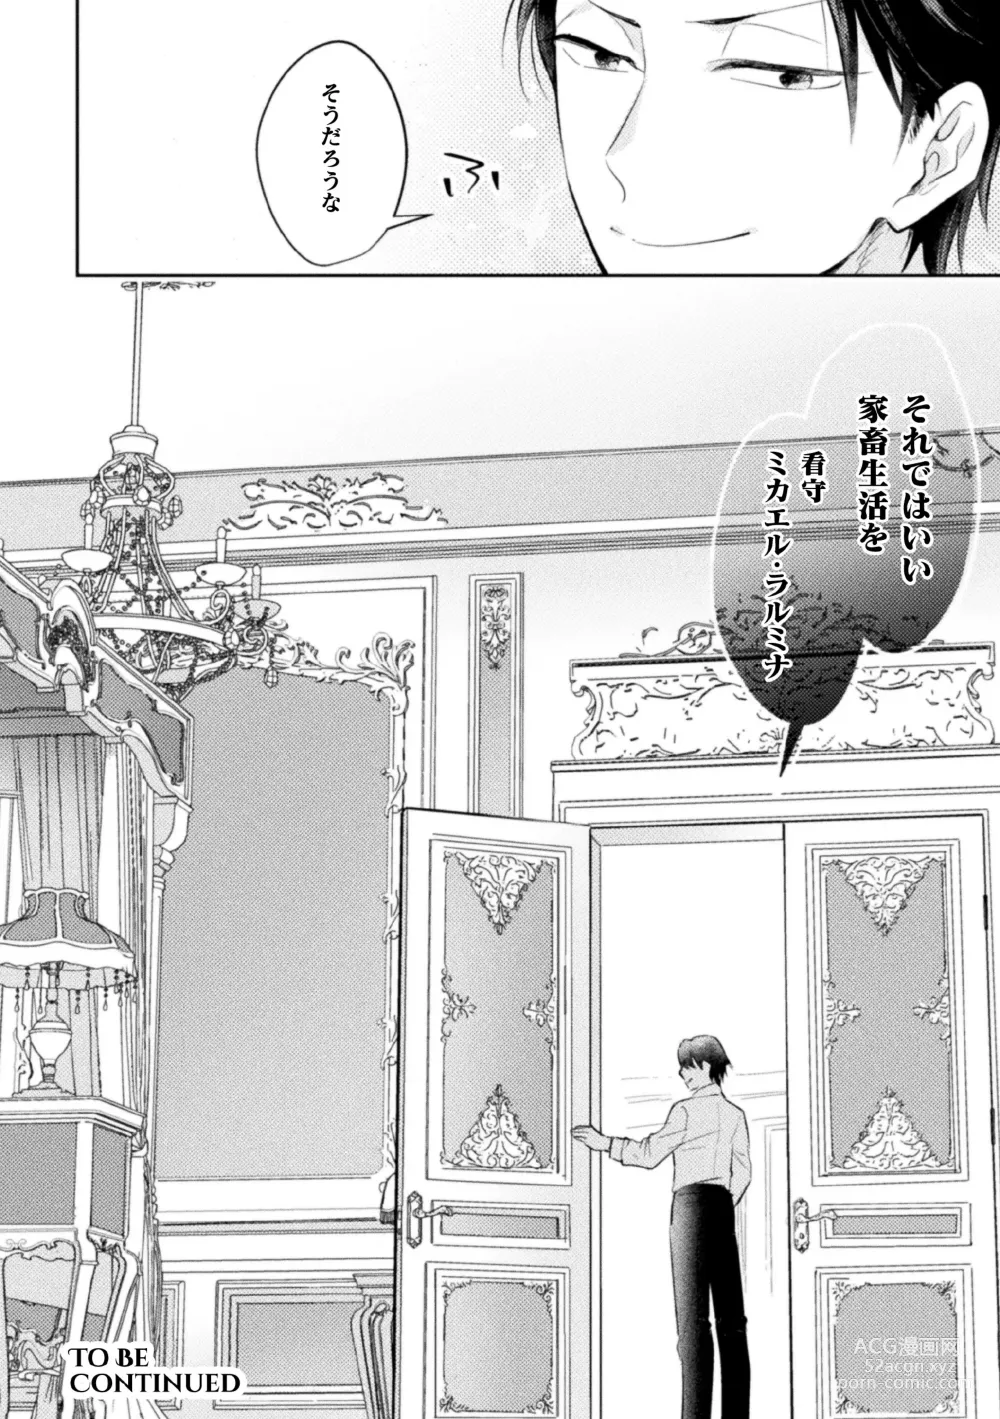 Page 38 of manga Zekkai Rougoku 3 Hatsujou Fukahi no Gekokujou